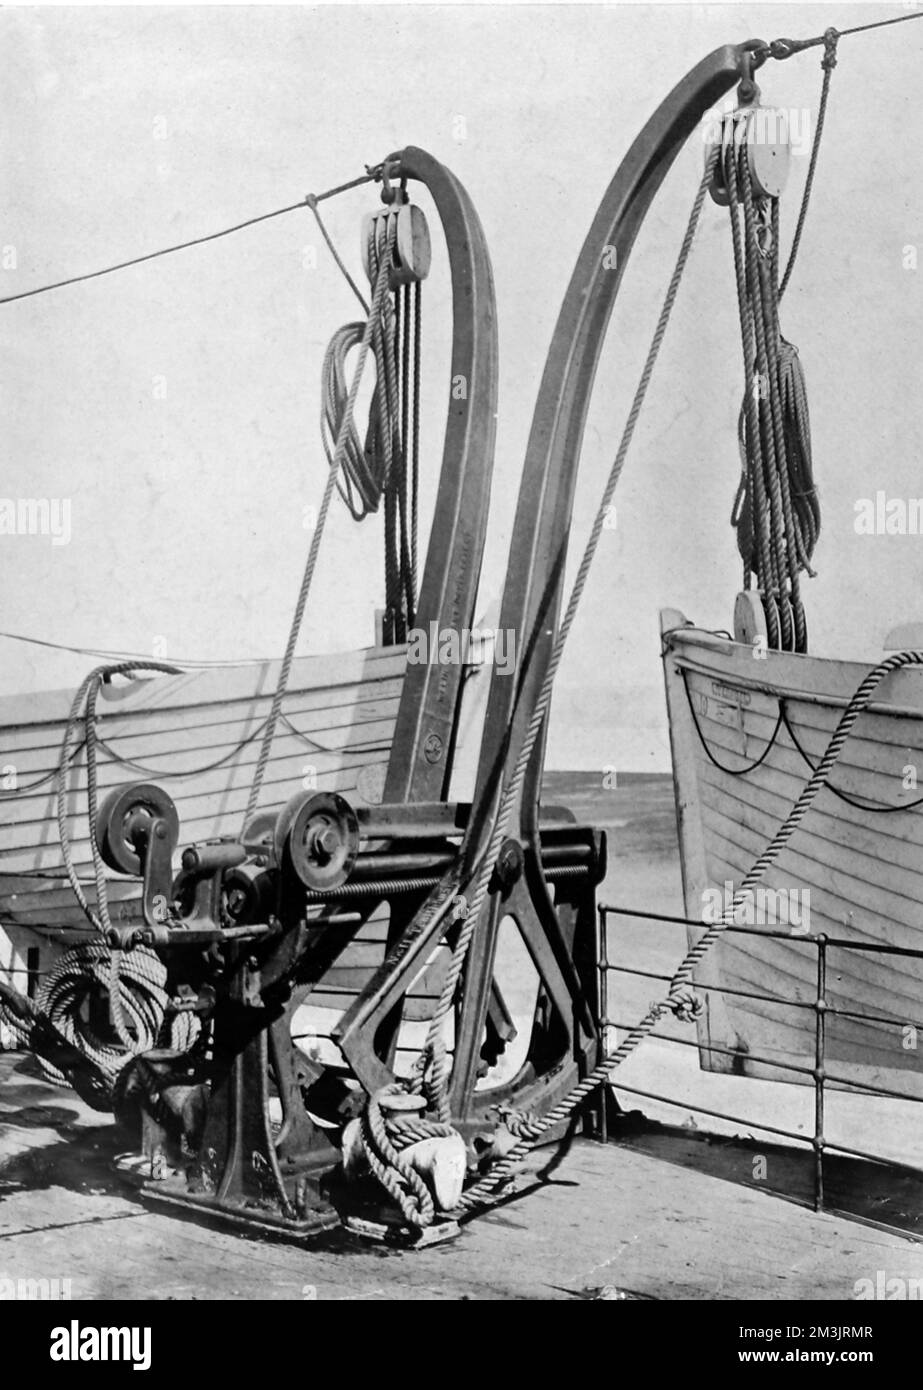 Eine Ansicht des Mechanismus, mit dem die Rettungsboote der Titanic abgesenkt wurden, zeigt ein Paar „Welin Davits“ an Bord. Das Davit, eine Erfindung von Herrn Axel Welin, ist in den meisten Passagierflugzeugen zu finden. Das Zahnrad auf dem Basispunkt ermöglichte es, die Boote innerhalb von Sekunden abzusenken. Datum: 1912 Stockfoto